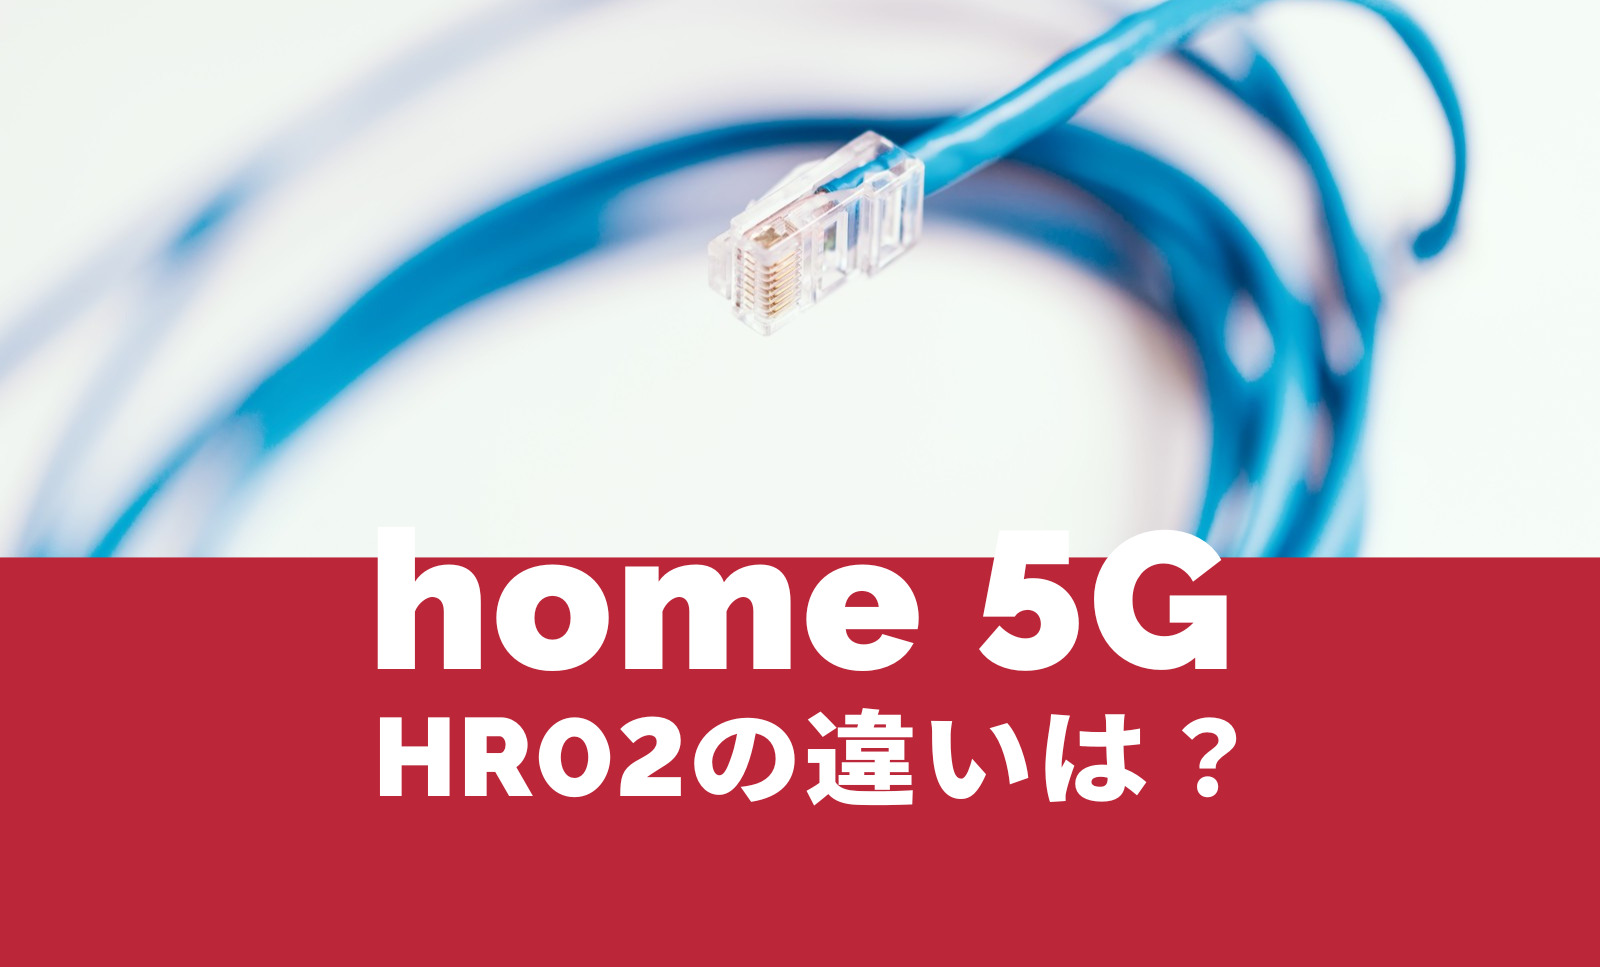 ドコモ home 5G HR02の違いをHR01と比較して解説のサムネイル画像